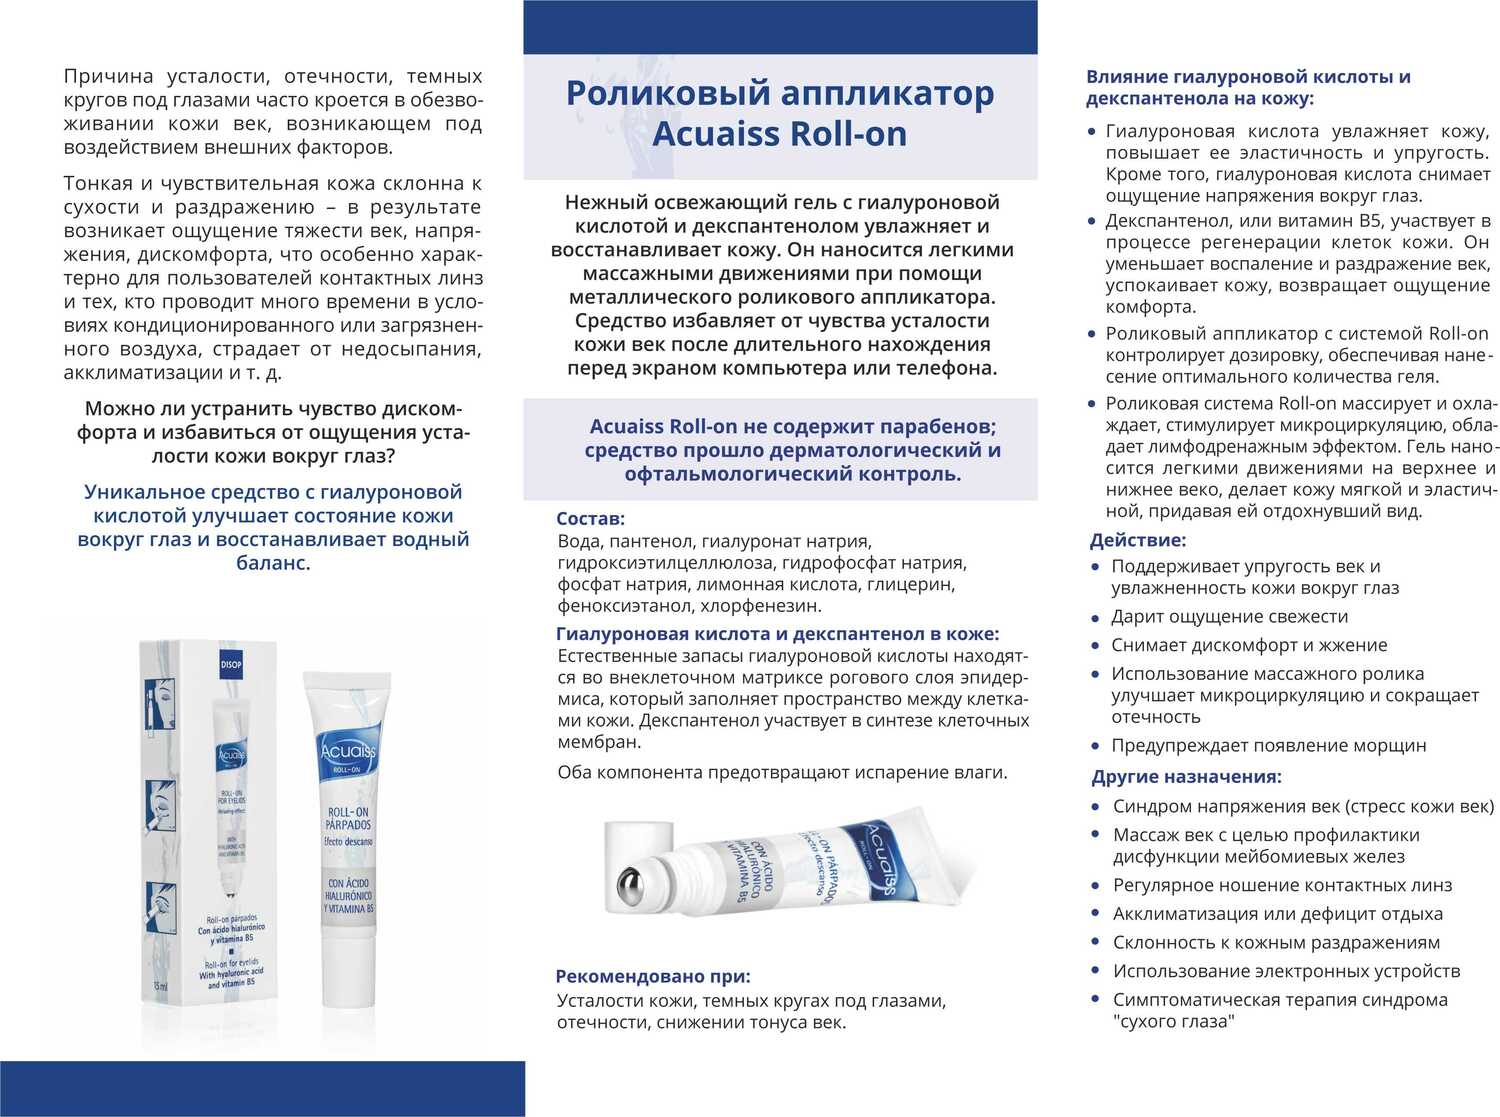 ЕВРО БУКЛЕТЫ для косметических и фармацевтических компаний 